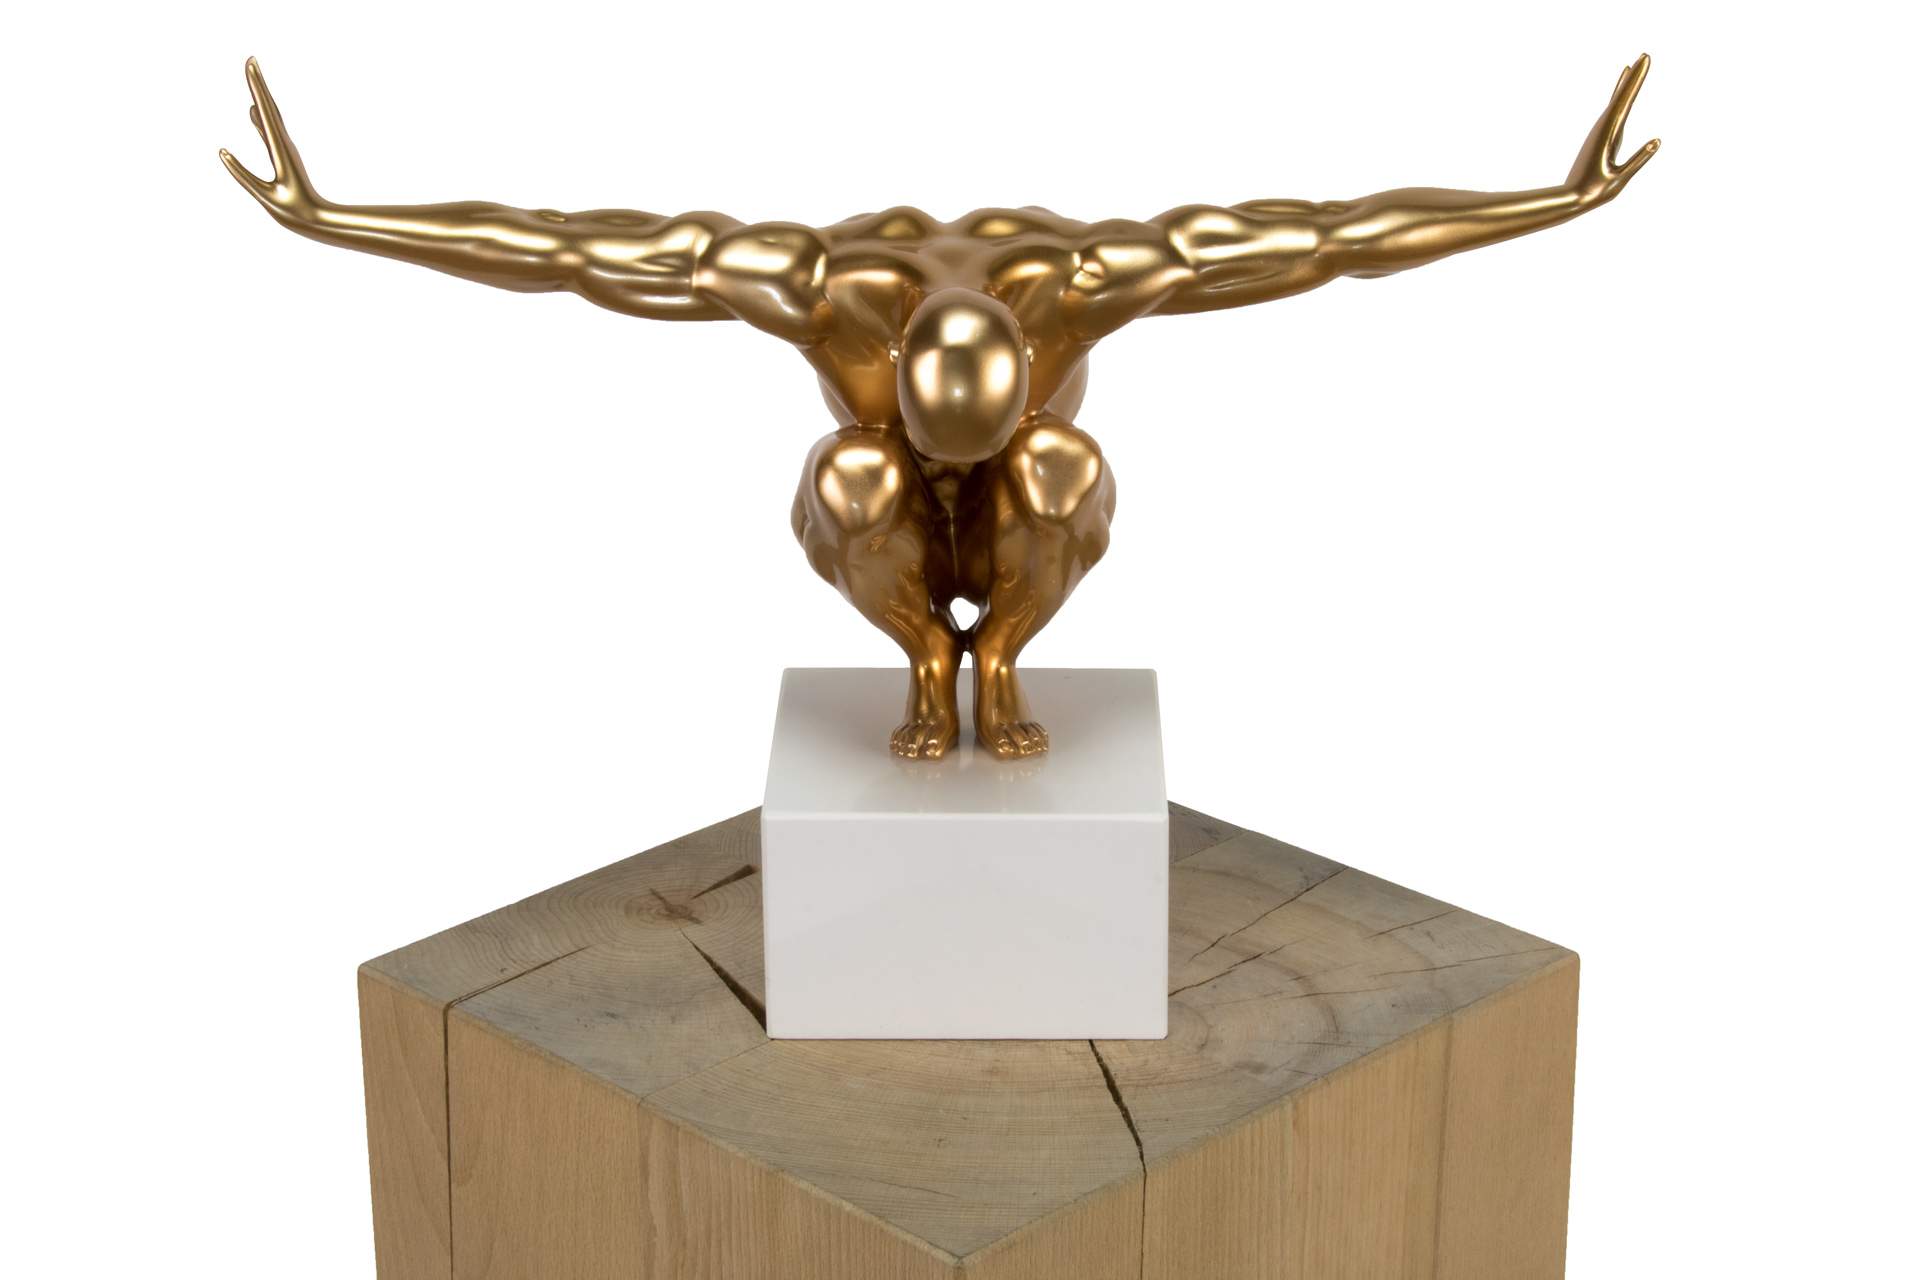 KL modern athlet deko gold skulptur statue aus stein figur plastik 01